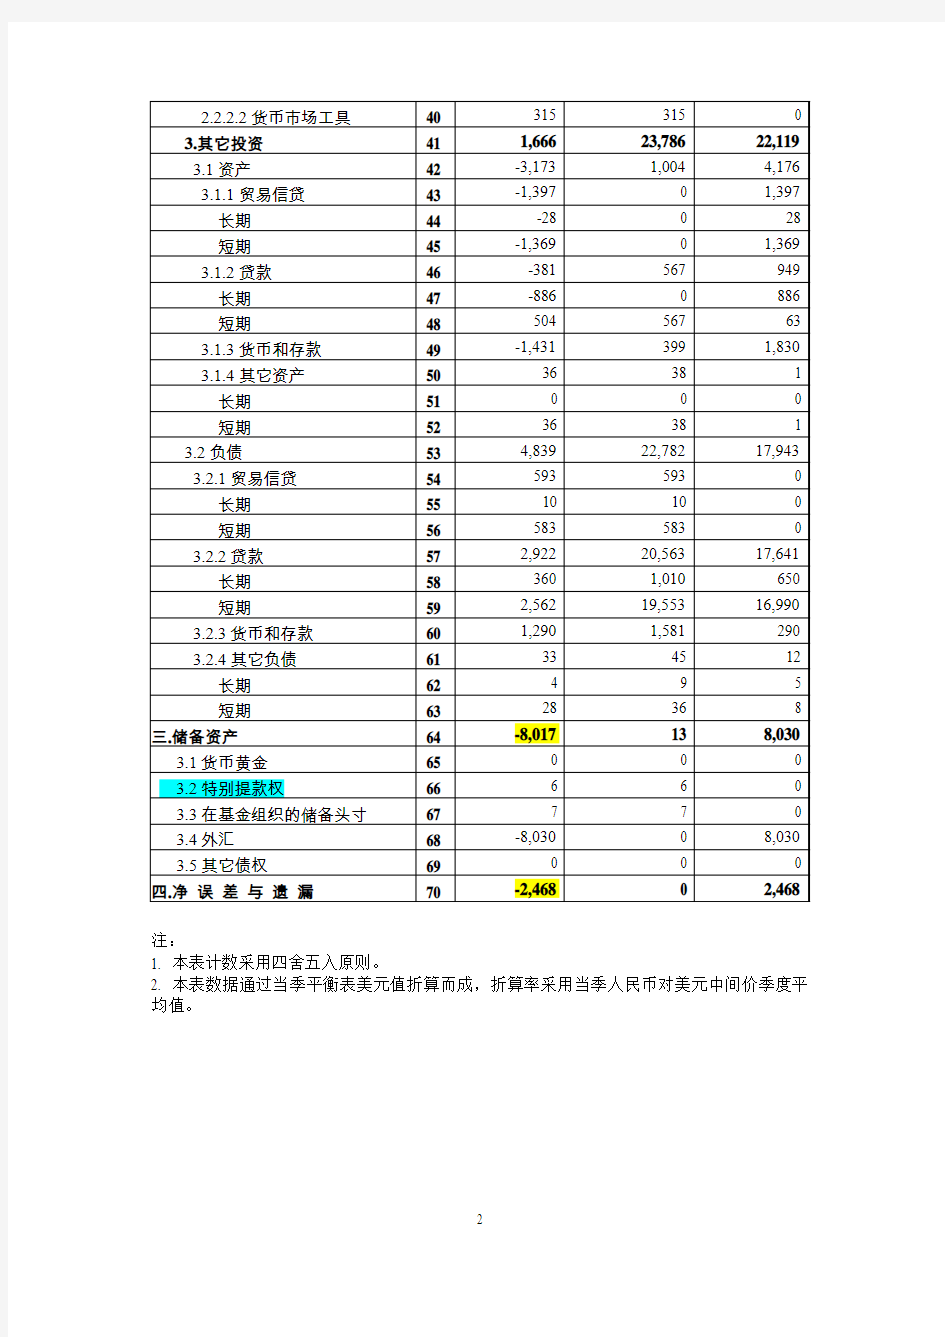 中国国际收支平衡表2013年第四季度及全年